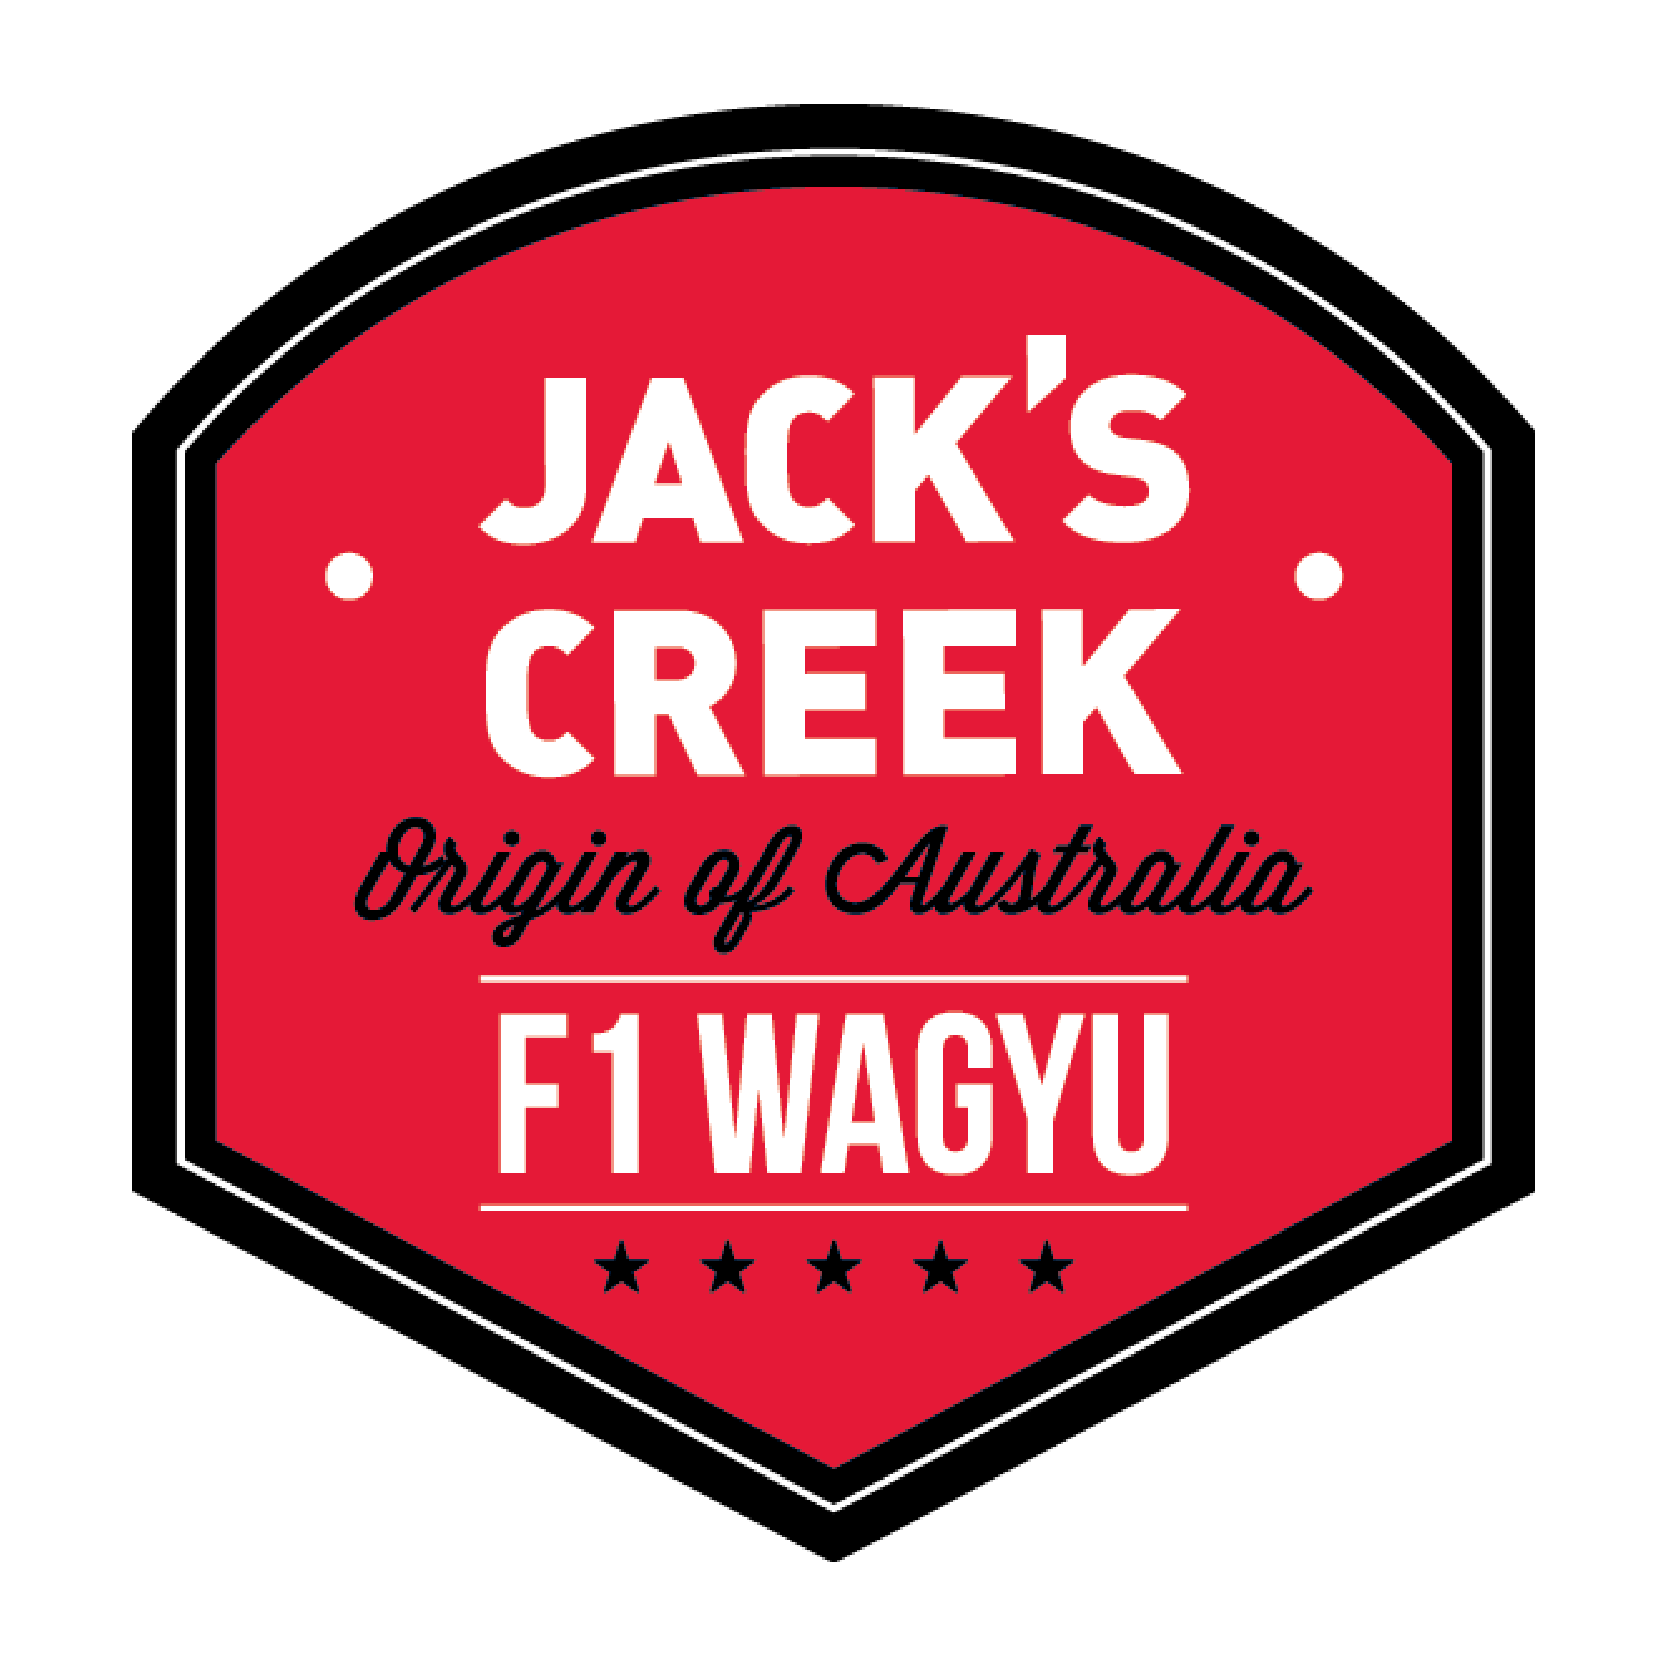 Jack's Creek F1 WAGYU